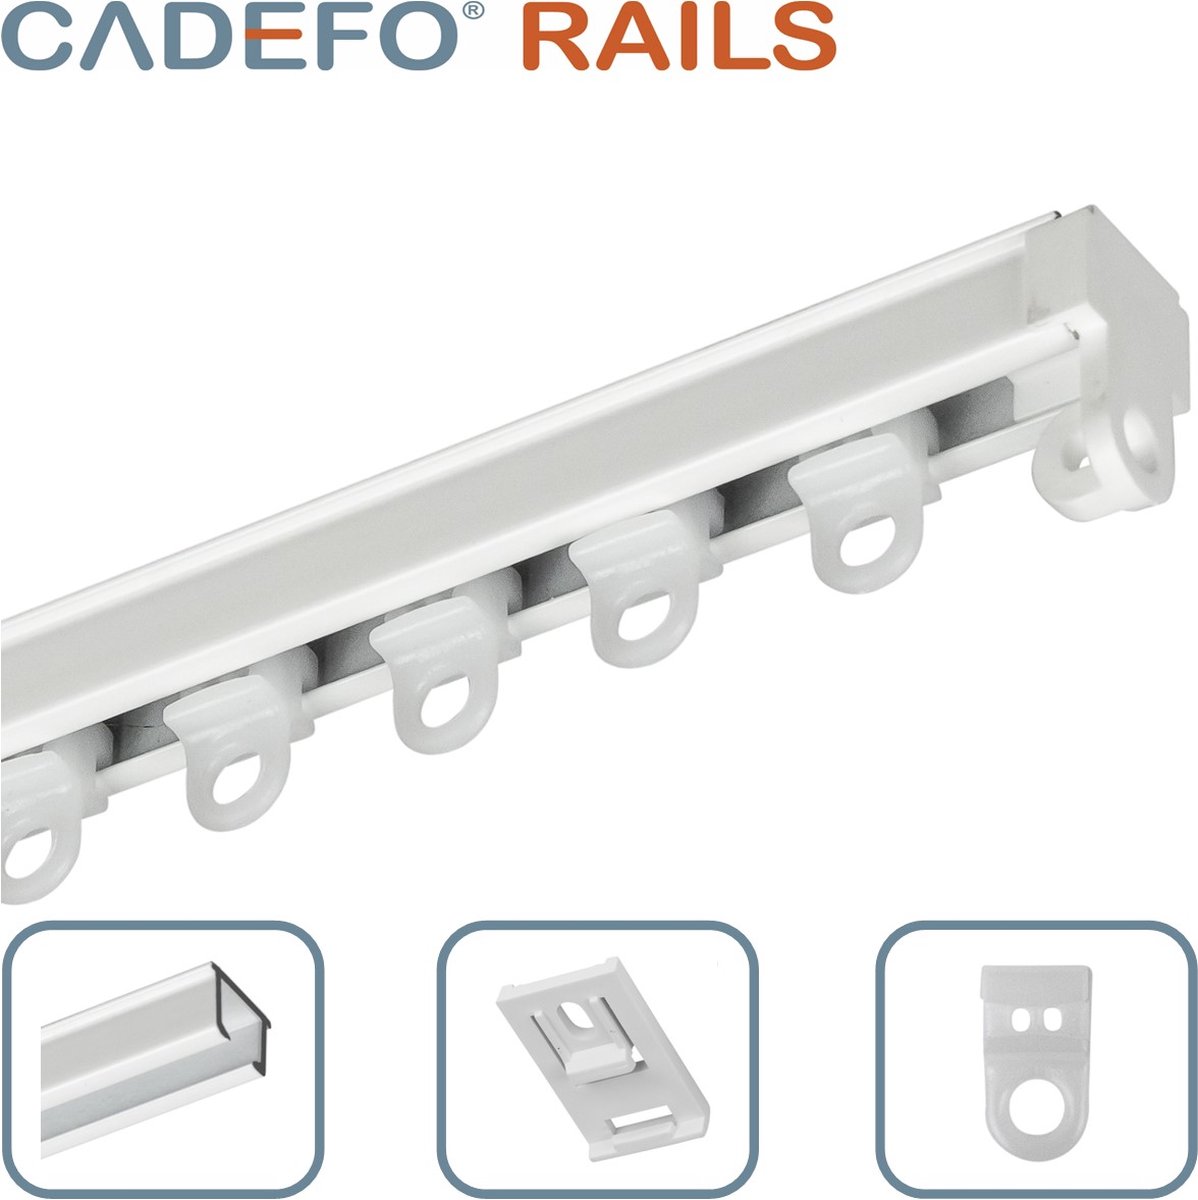 CADEFO RAILS (101 - 150 cm) Gordijnrails - Compleet op maat! - UIT 1 STUK - Leverbaar tot 6 meter - Plafondbevestiging - Lengte 121 cm